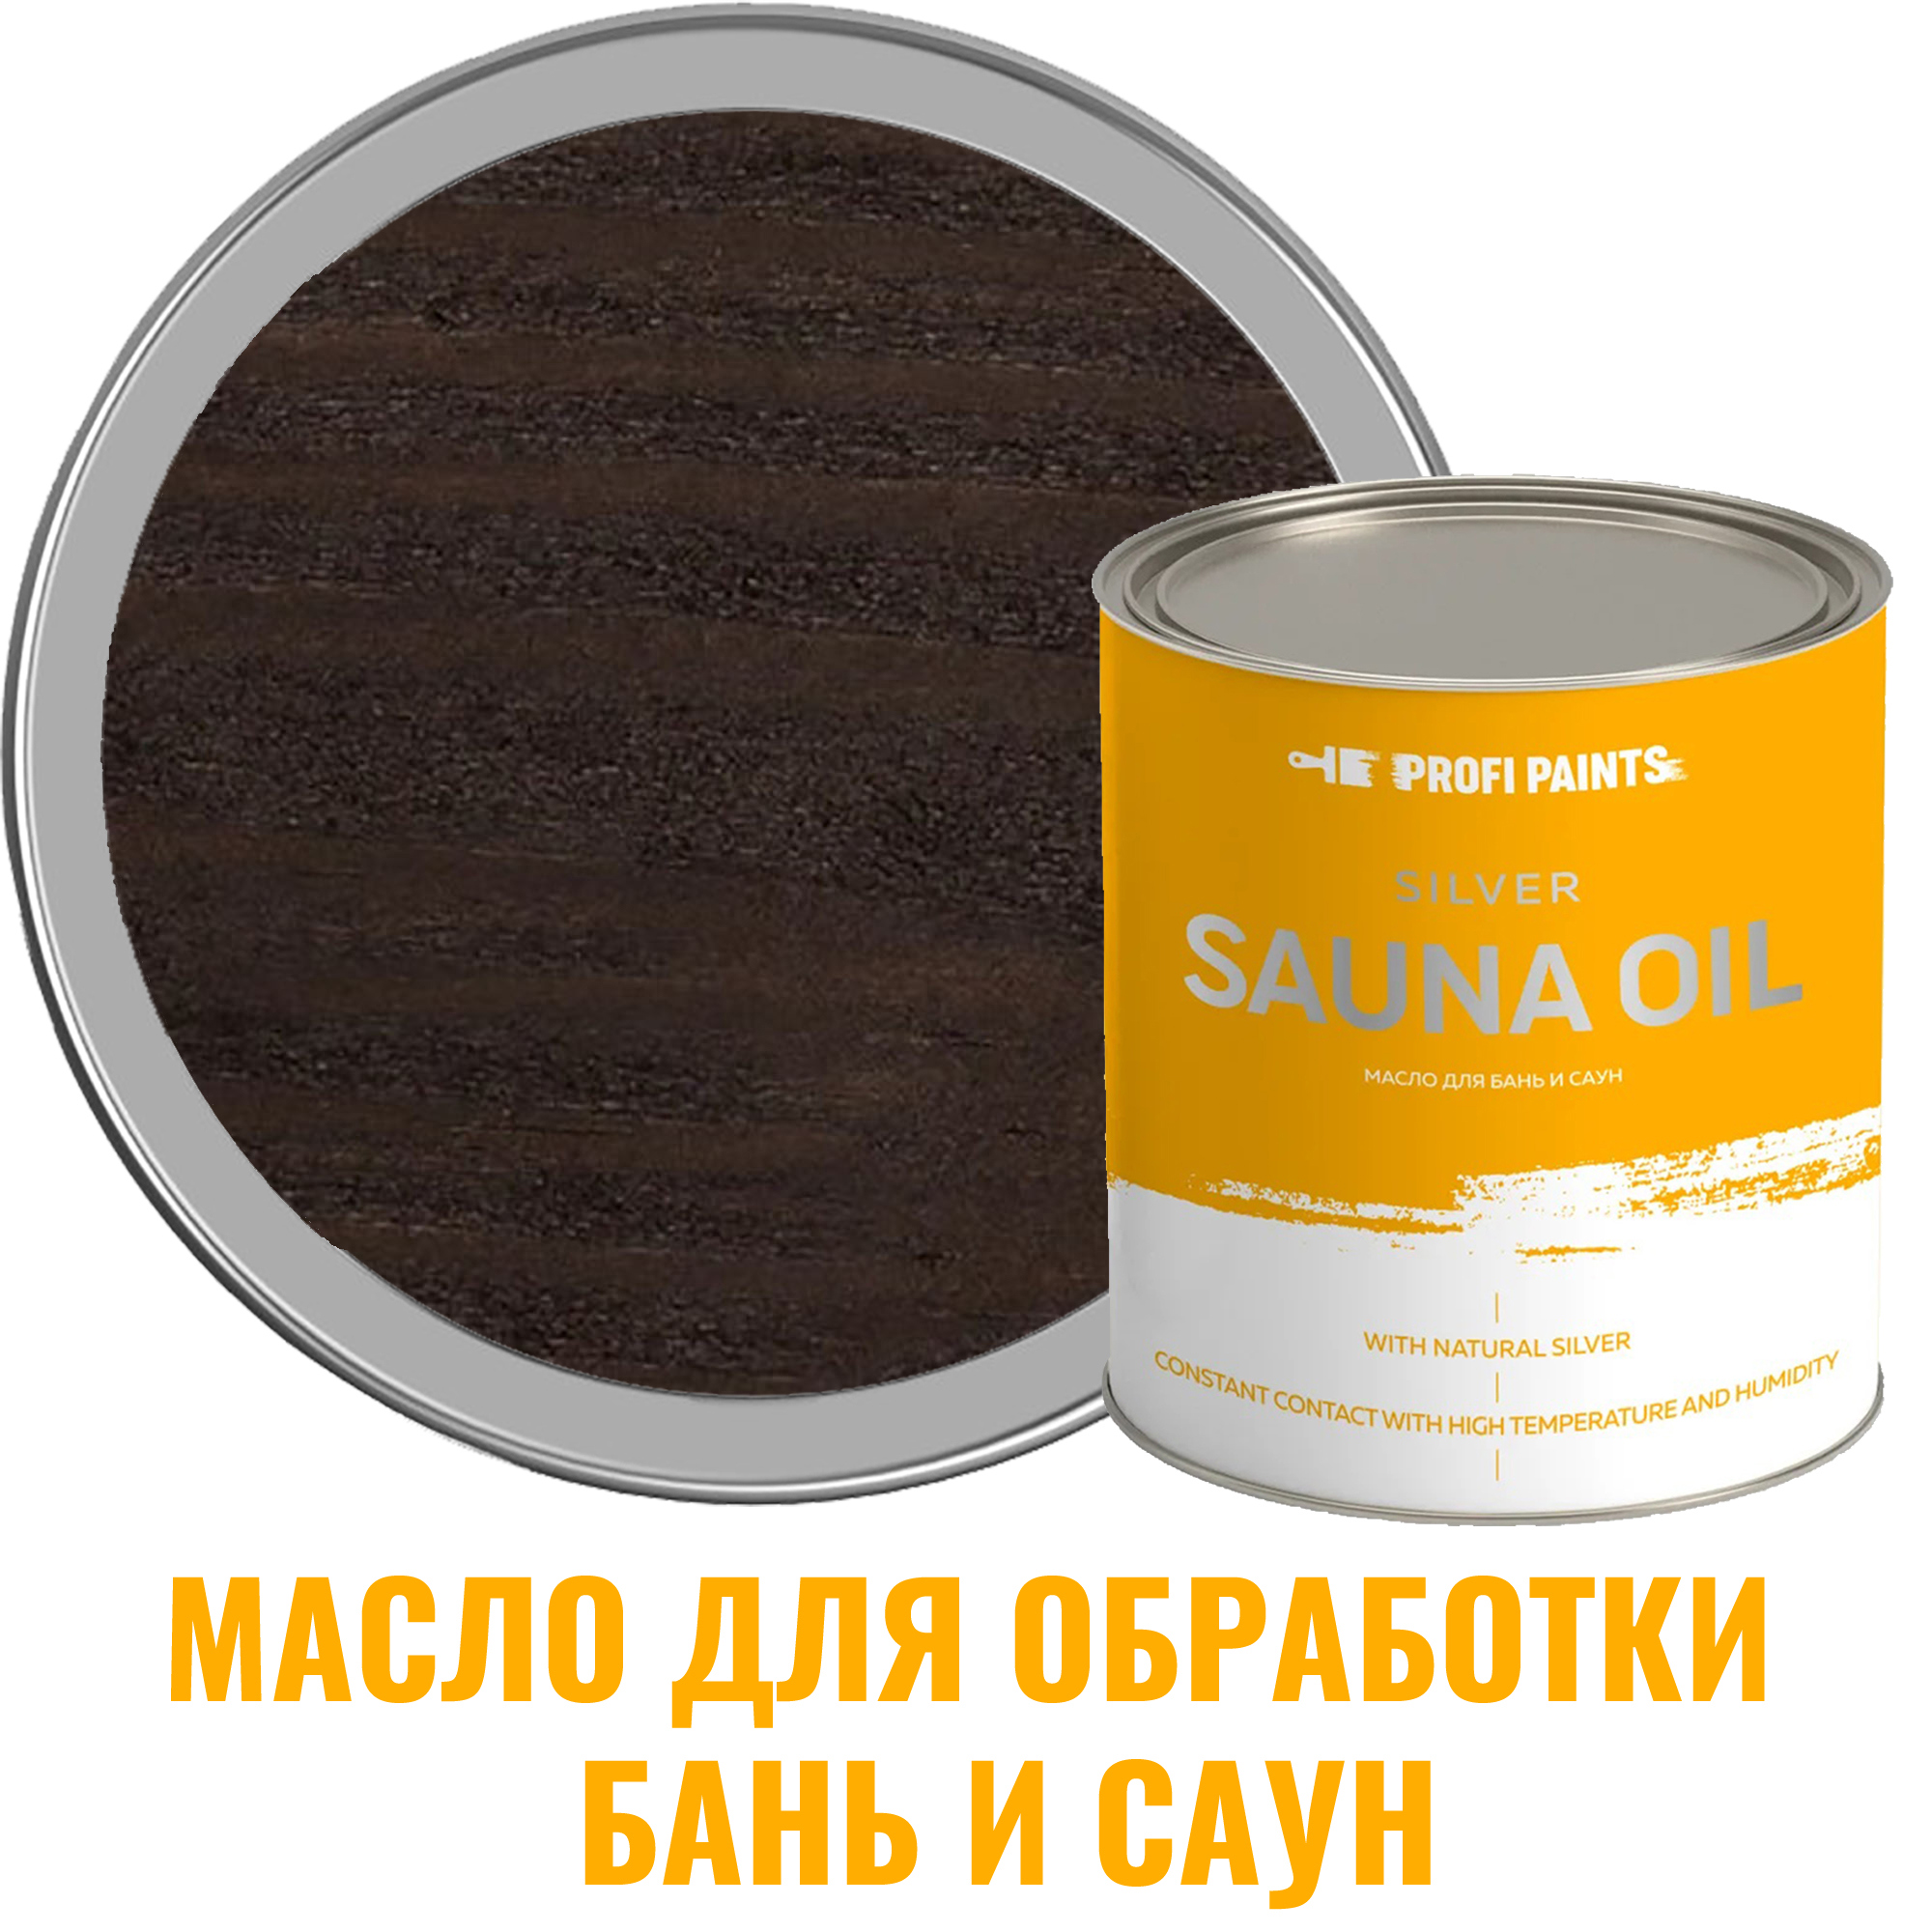 91095365 Масло для бань и саун 10804_D Silver Sauna Oil цвет венге 2.7 л STLM-0481727 PROFIPAINTS